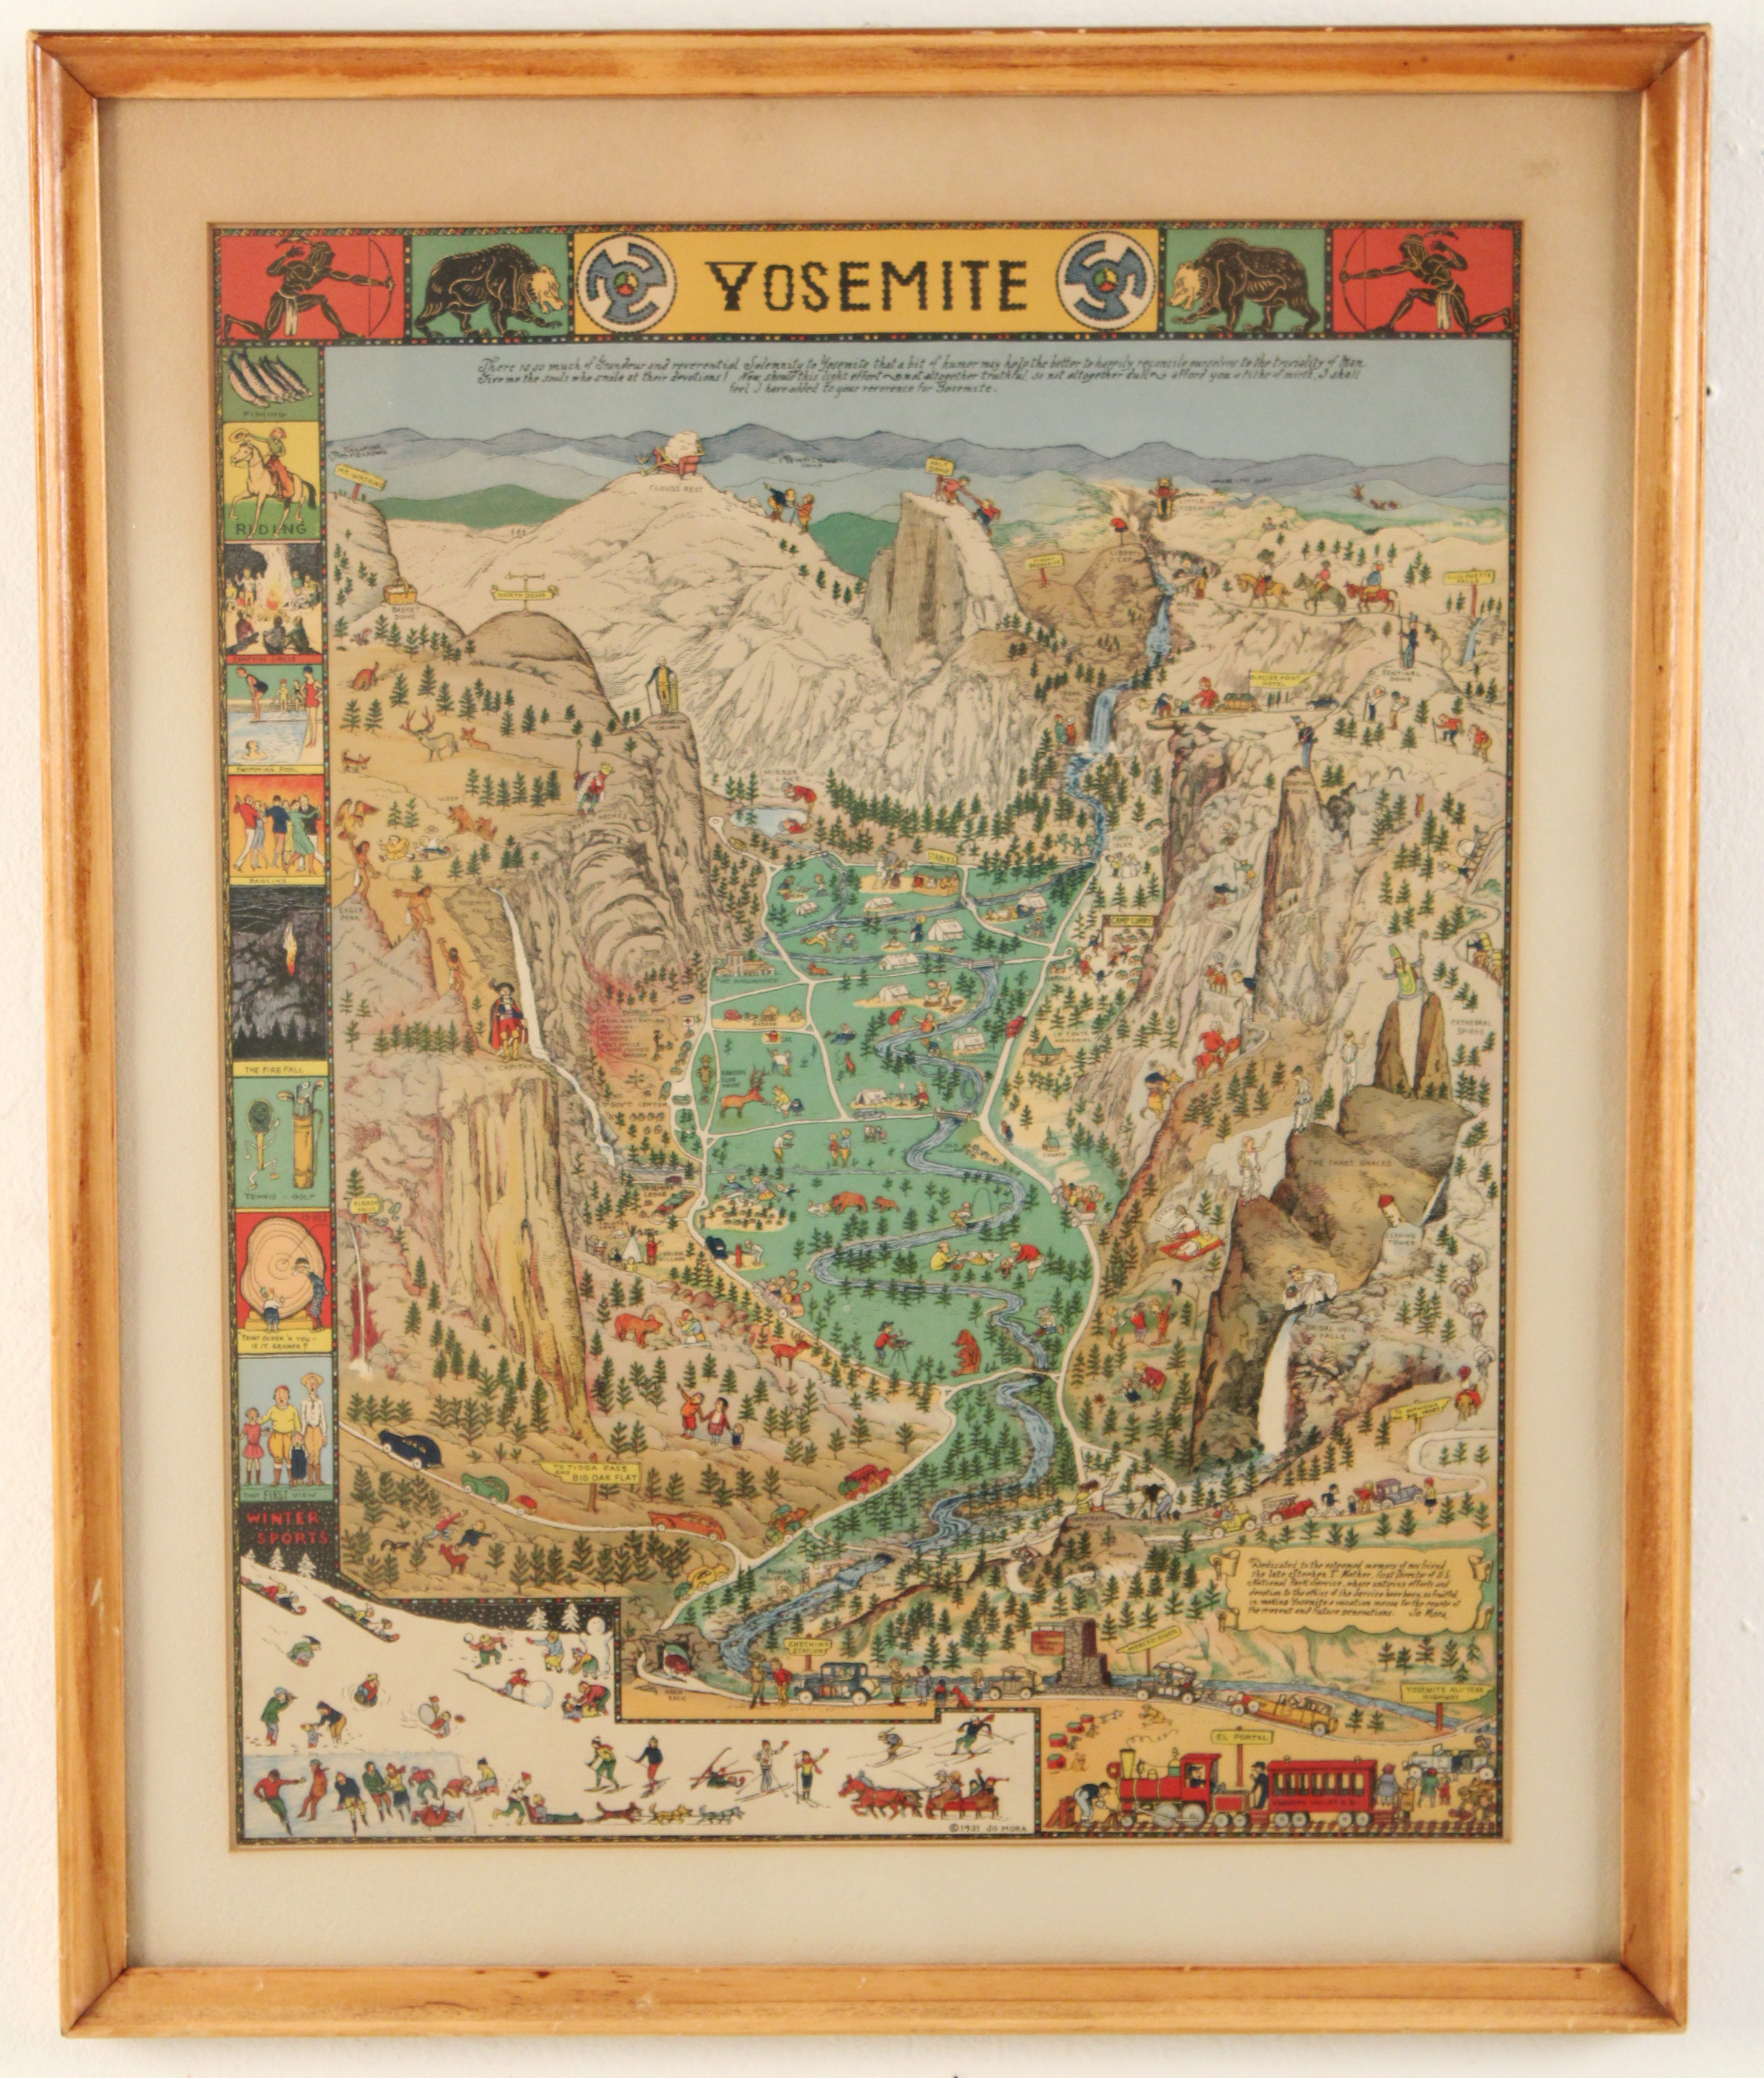 COLORED LITHOGRAPH OF YOSEMITE